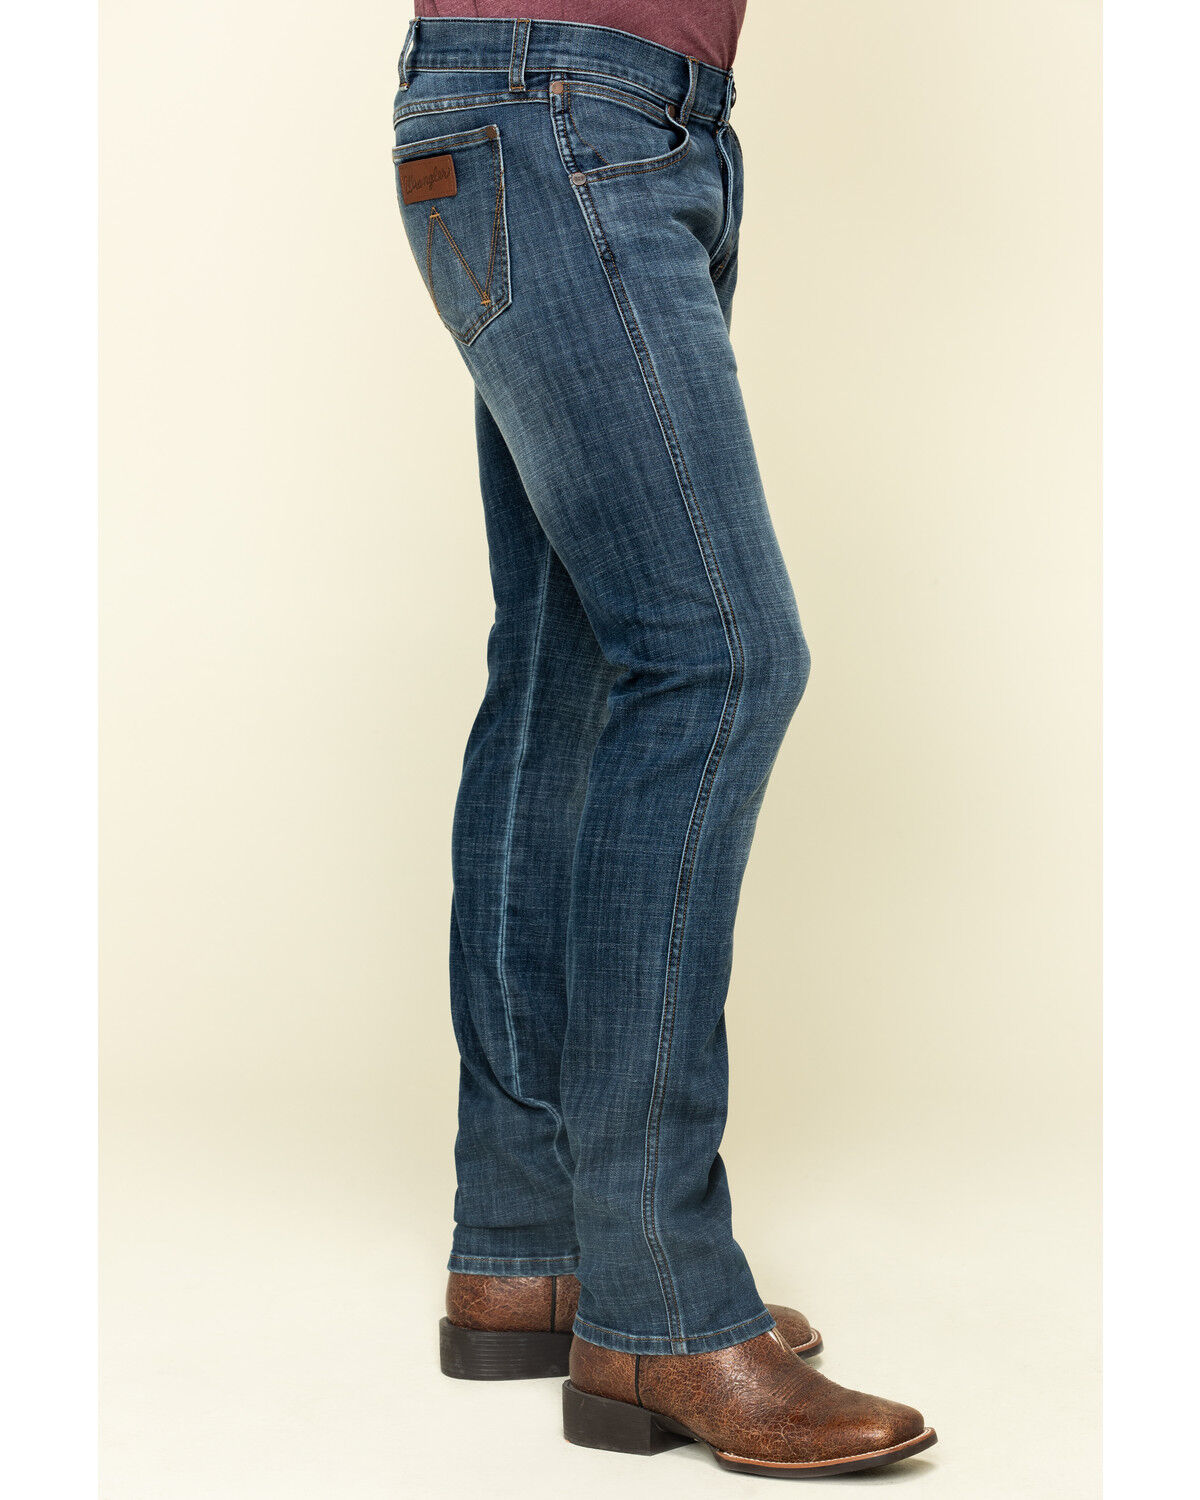 wrangler jeans mens